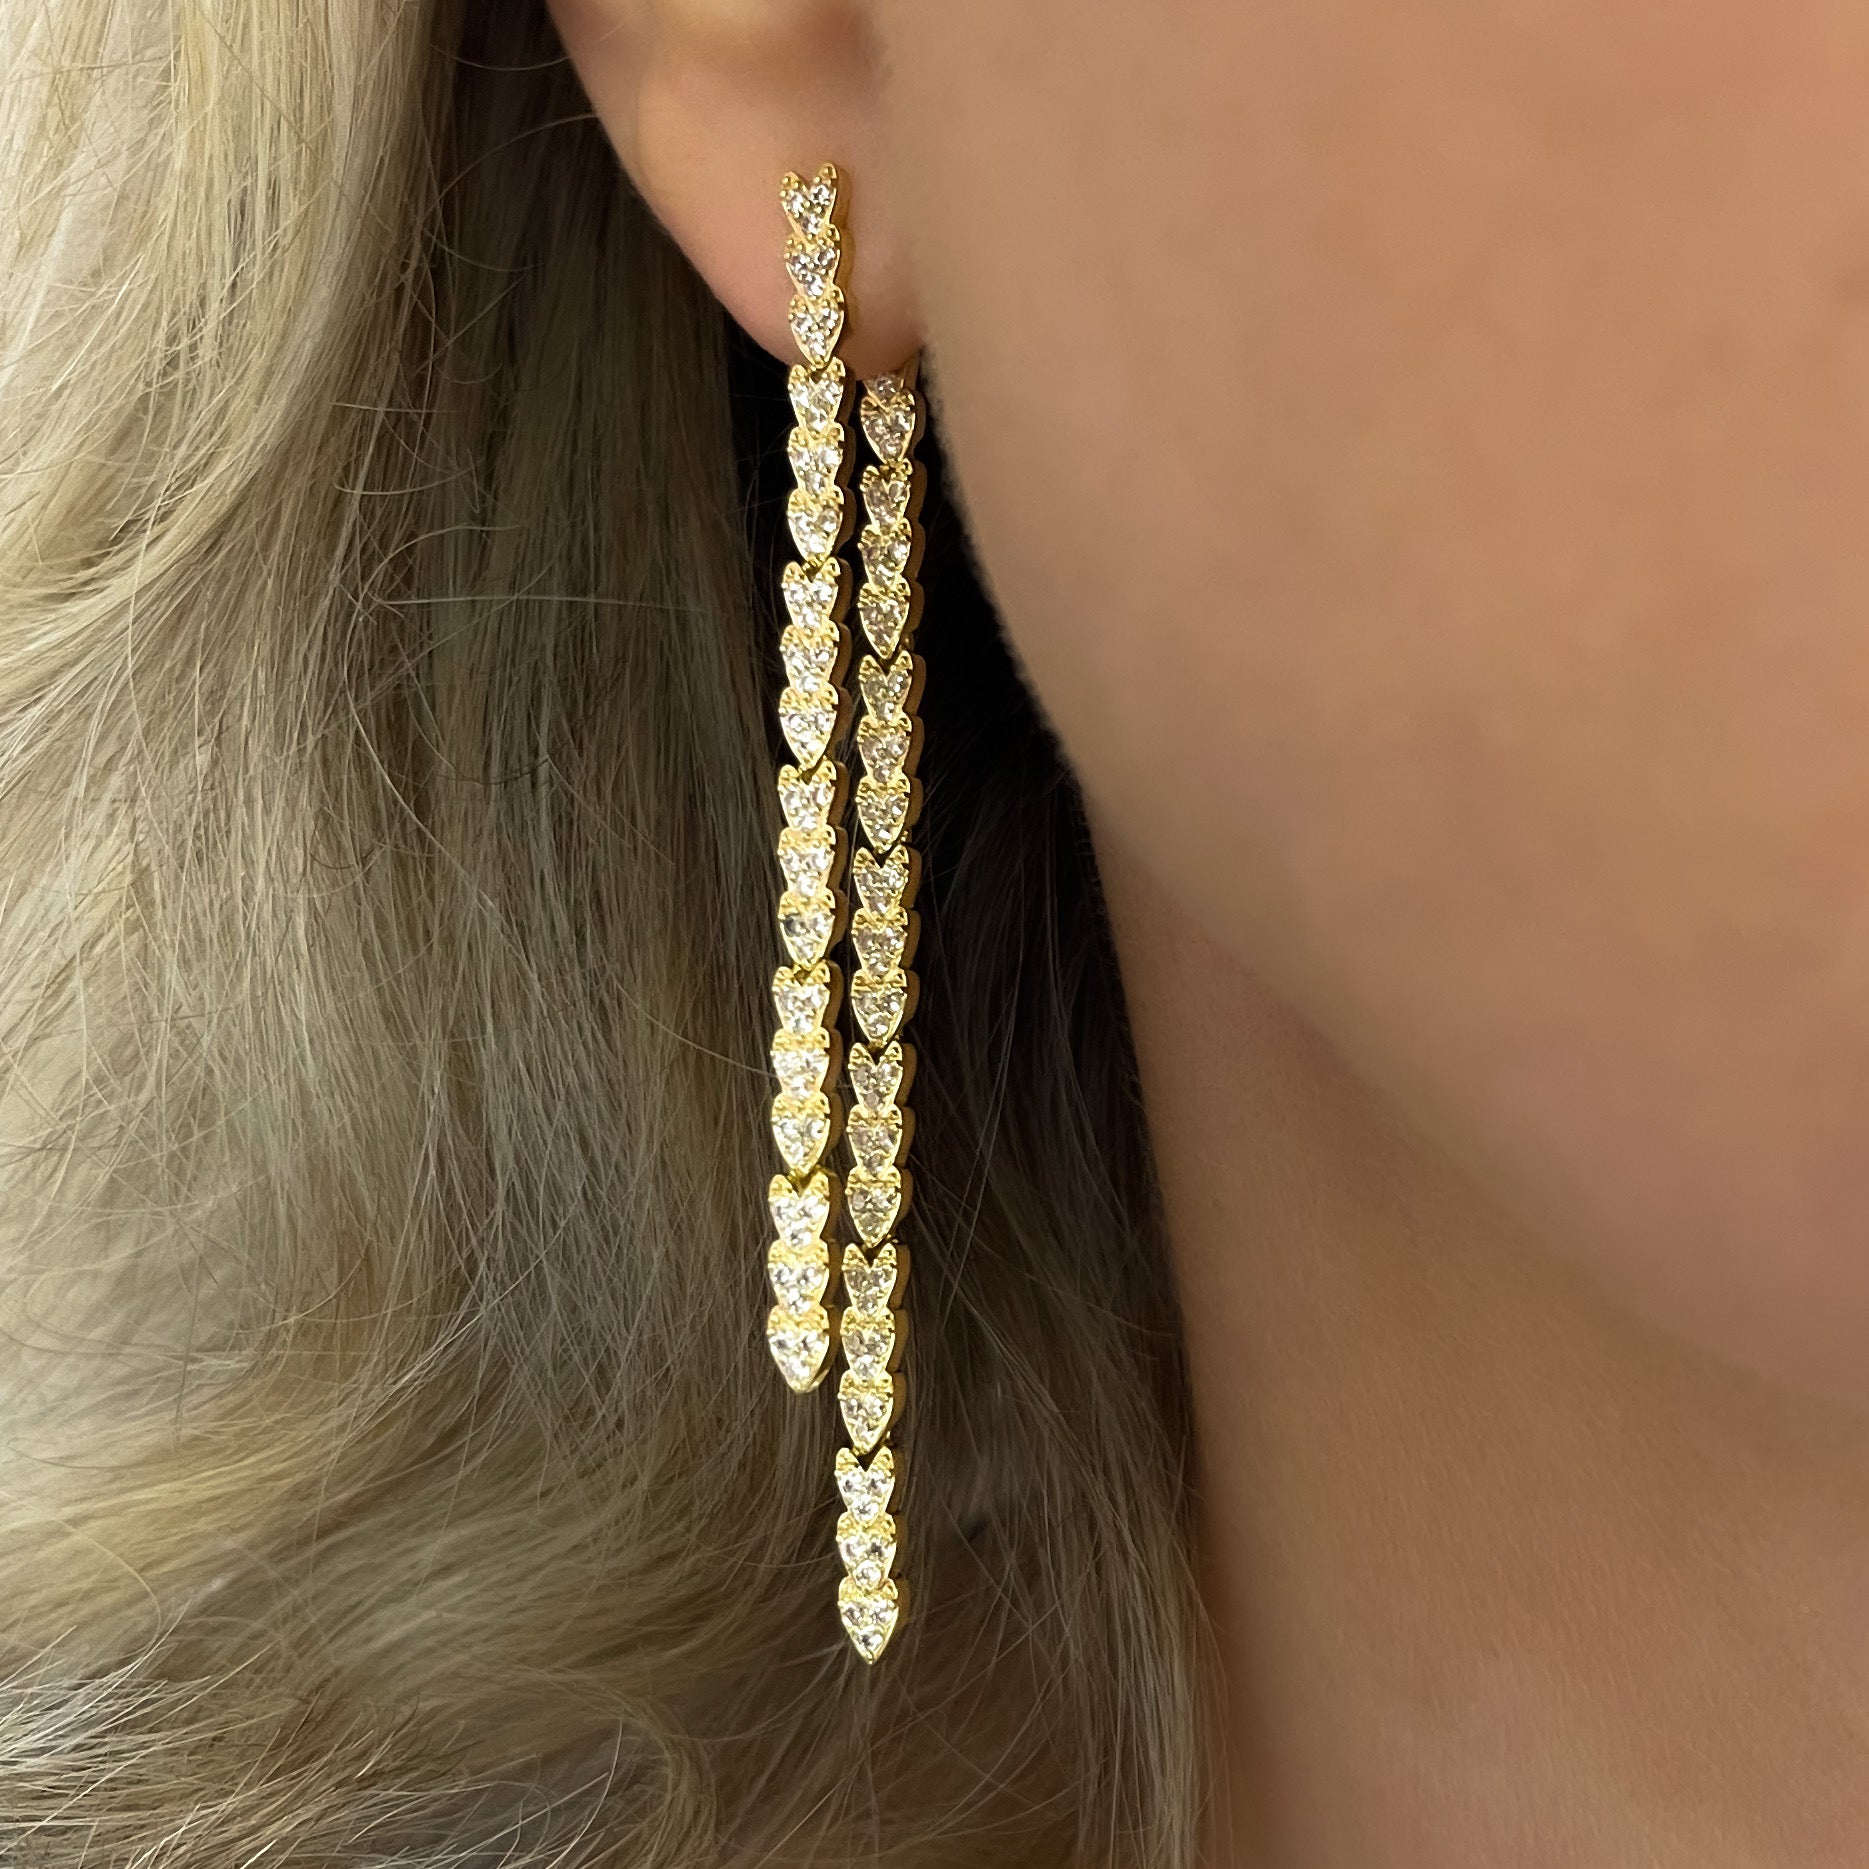 Gold earrings, long earrings, wedding earrings, long drop earrings, front to back earrings, going out earrings